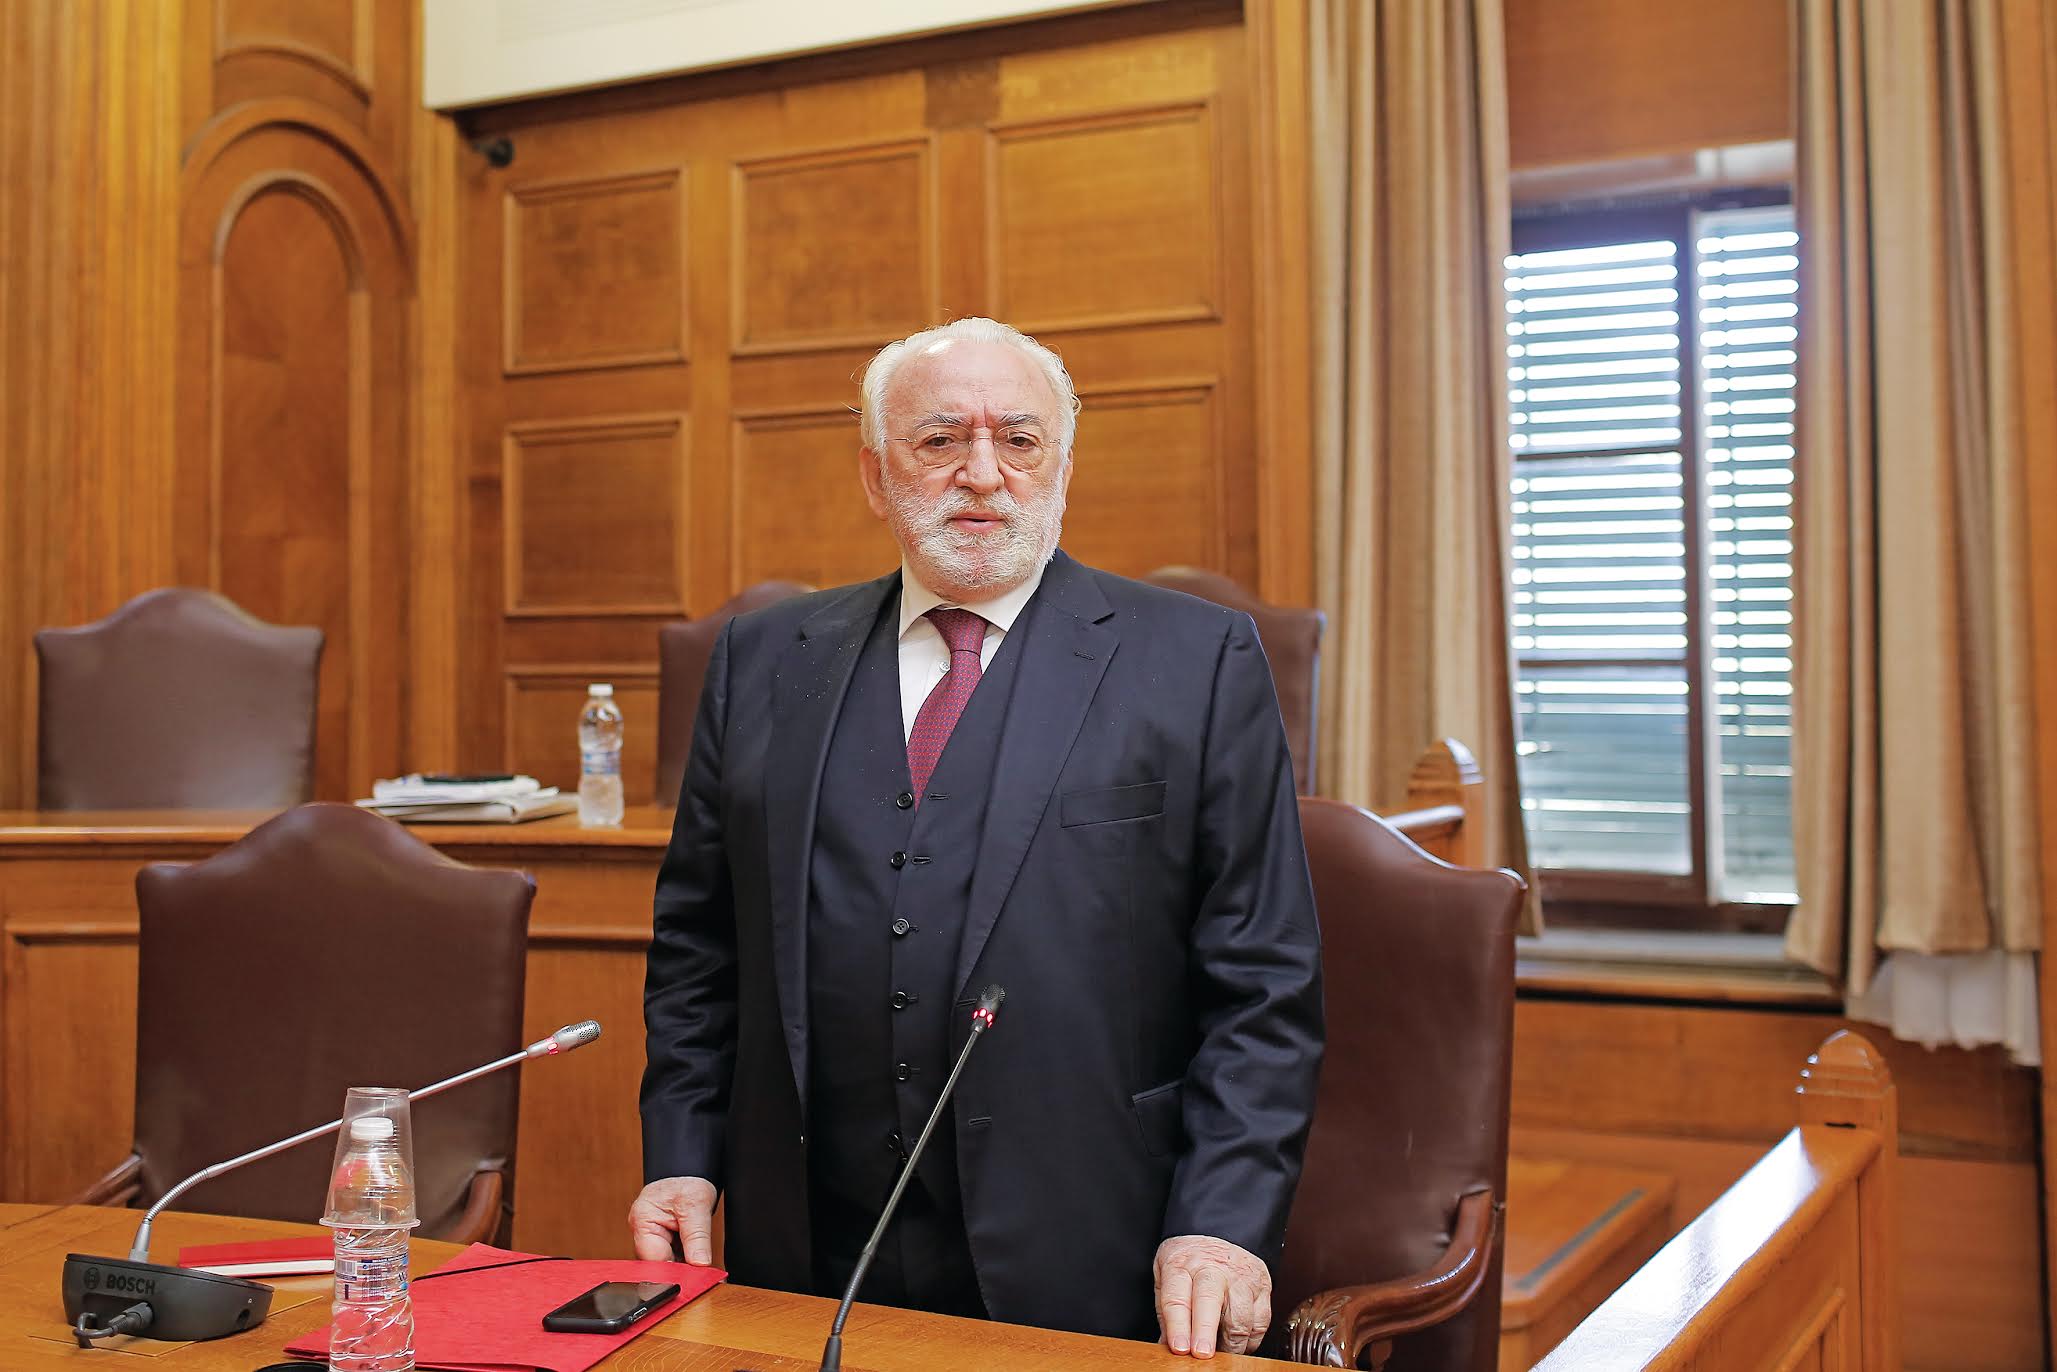 Μήνυση κατά της γραμματέως του Χρ. Καλογρίτσα κατέθεσε ο Ν. Παππάς - «Η συνέχεια στις δικαστικές αίθουσες» απαντά ο επιχειρηματίας